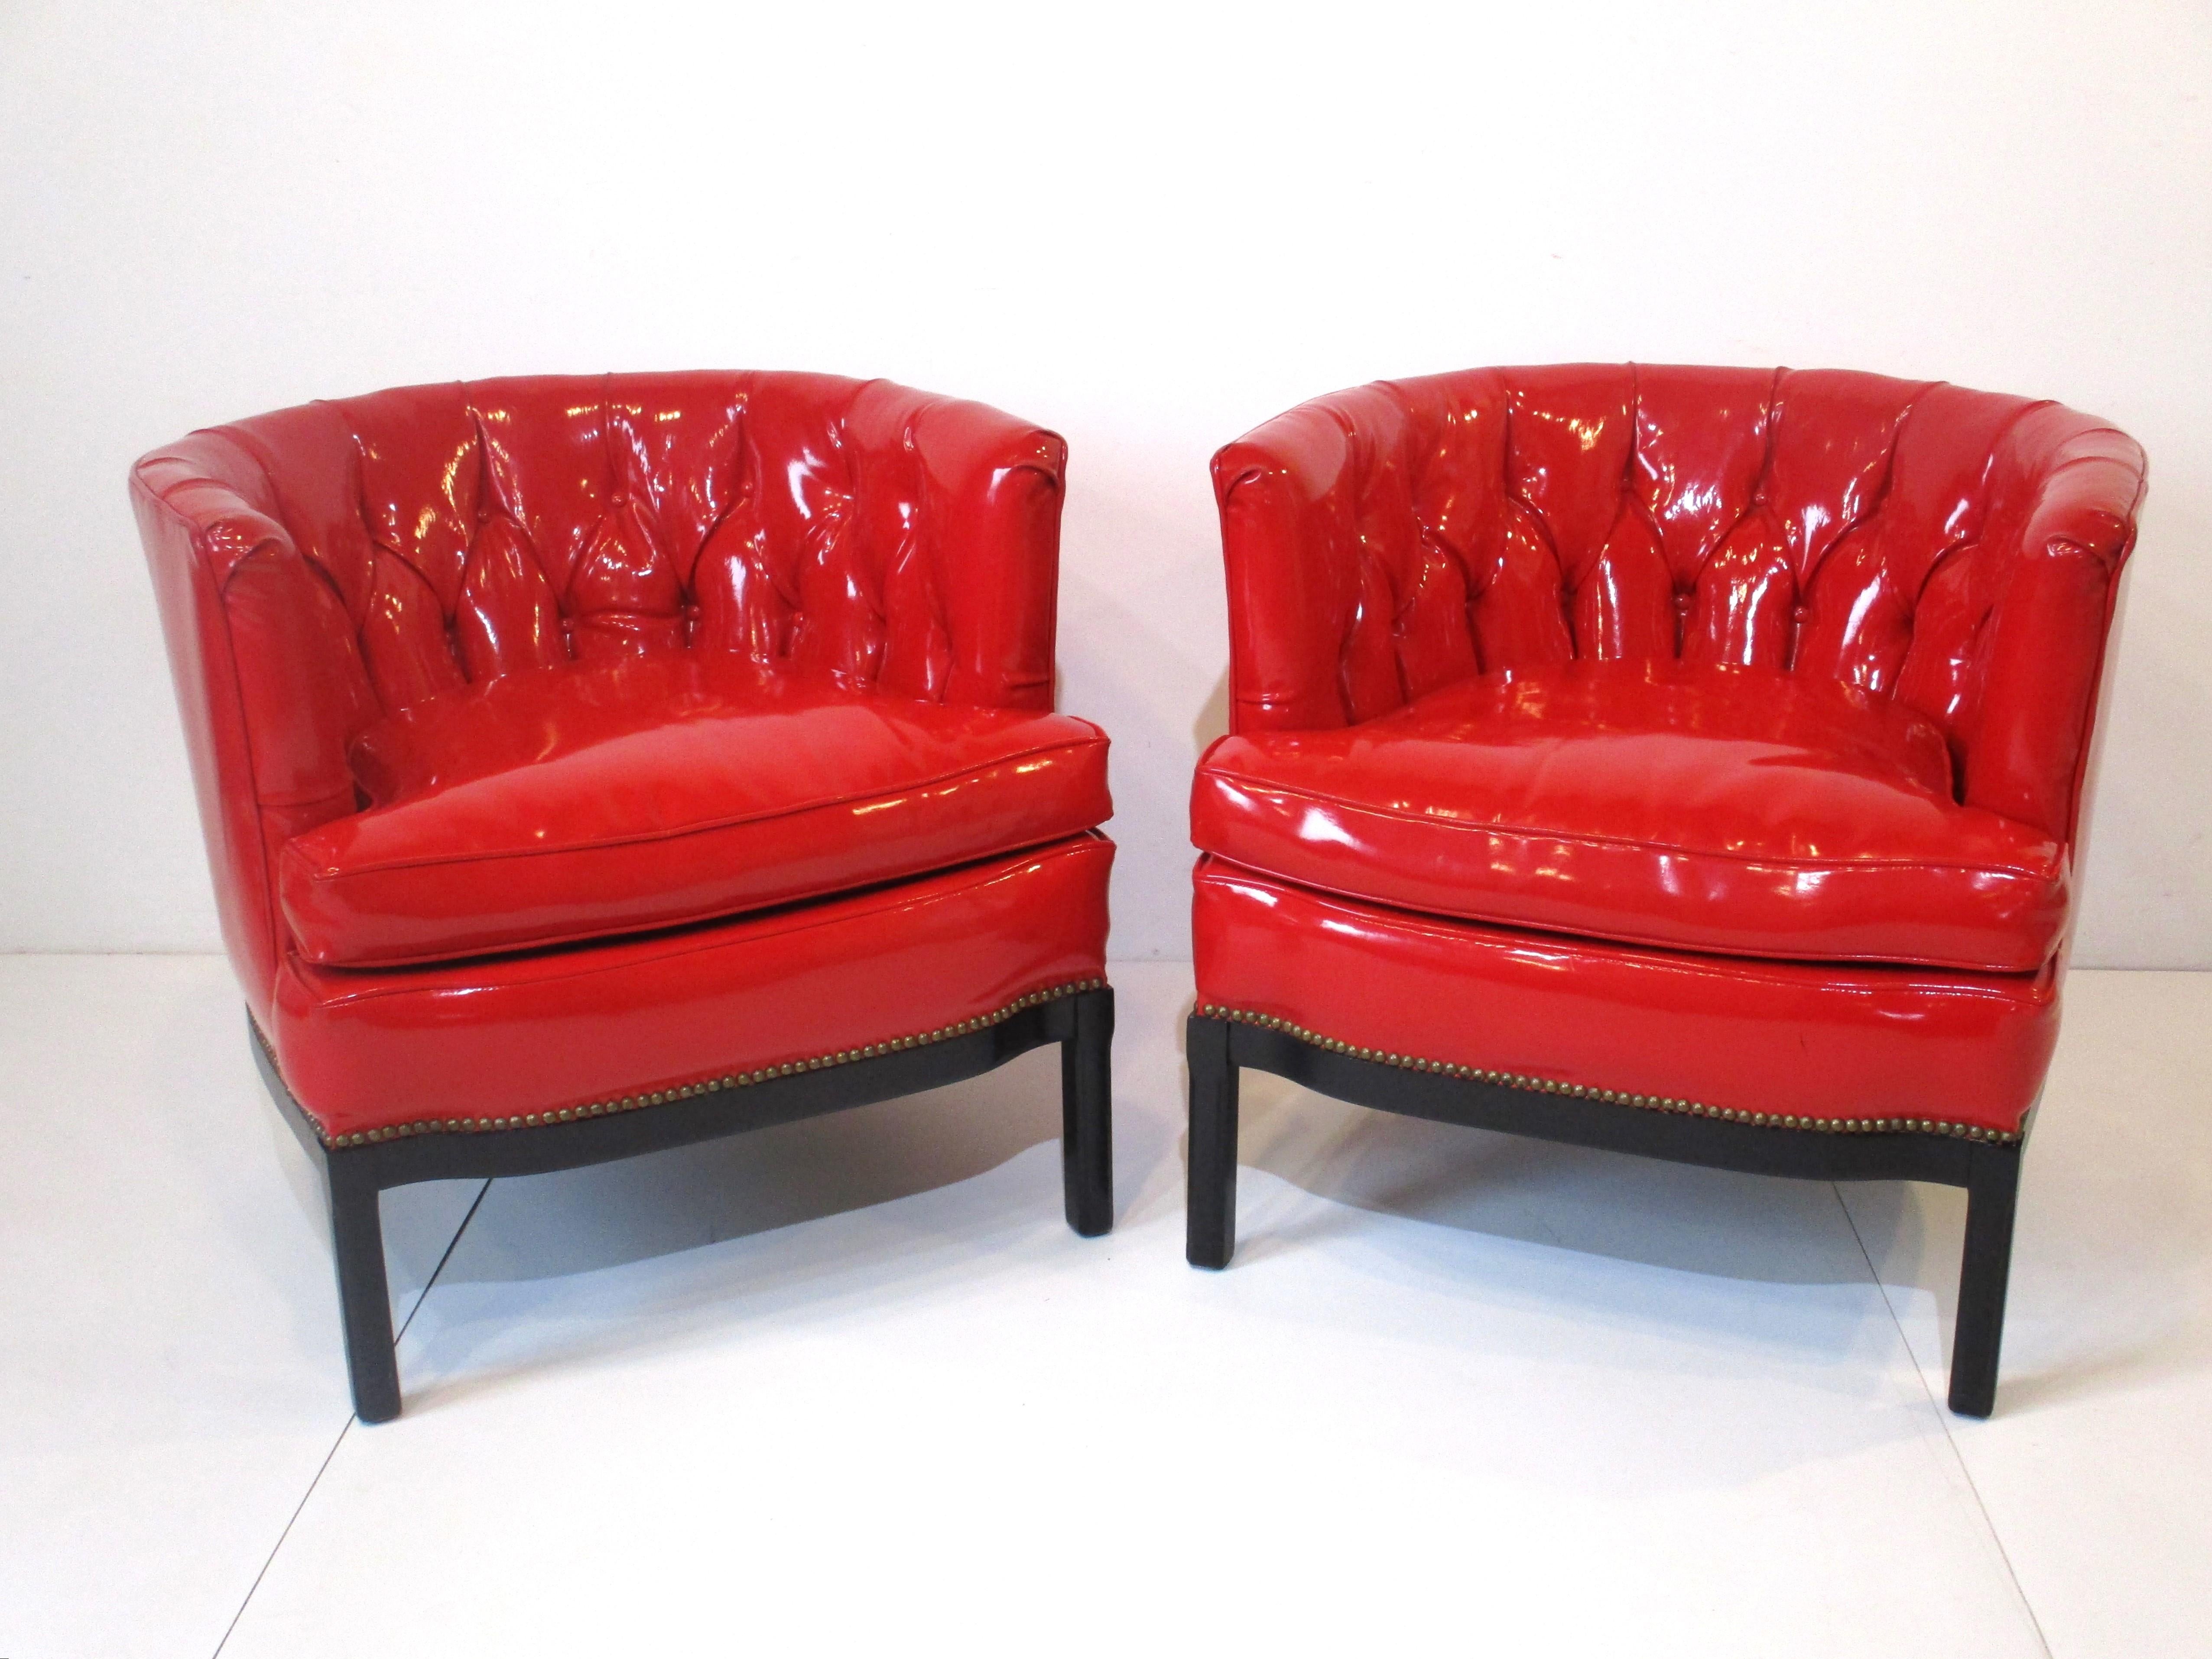 Fantastique paire de fauteuils club du milieu du siècle avec dossier touffeté en Naugahyde rouge d'aspect liquide, pieds noirs satinés et garniture inférieure en laiton. Ces chaises à dossier arrondi sont très confortables et bien fabriquées avec